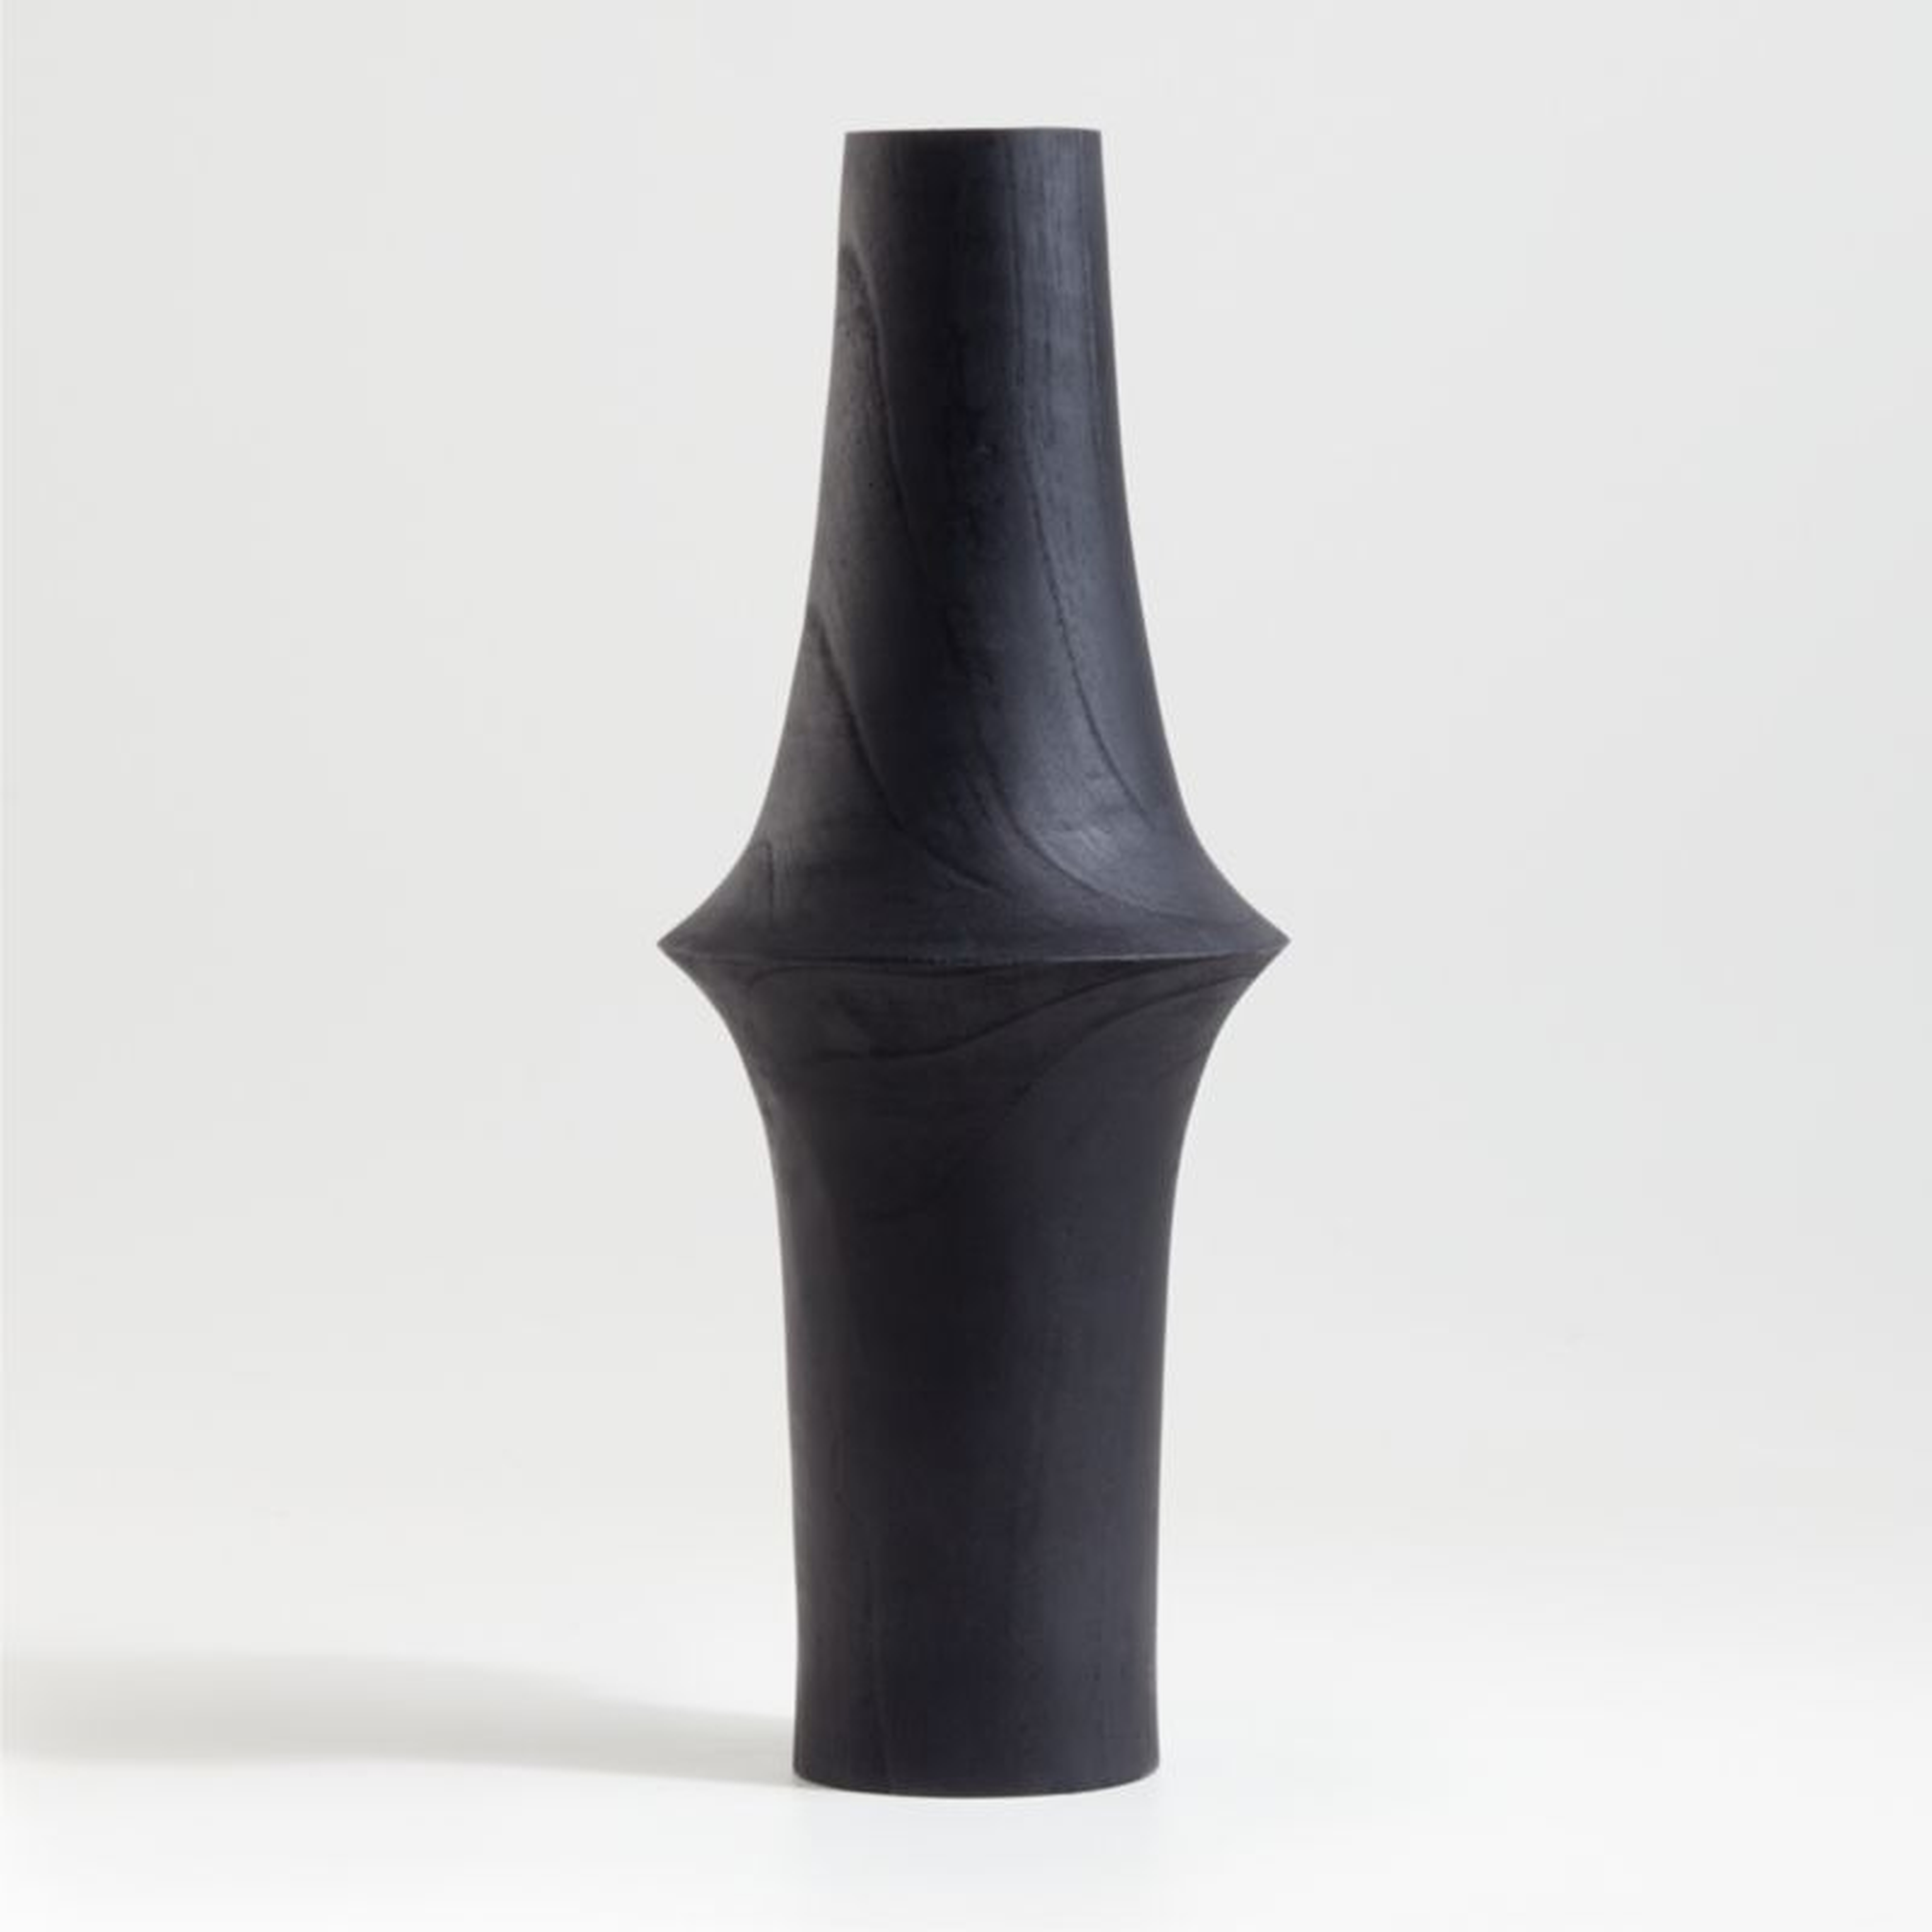 Arllon Wood Vase, Black, Medium - Crate and Barrel